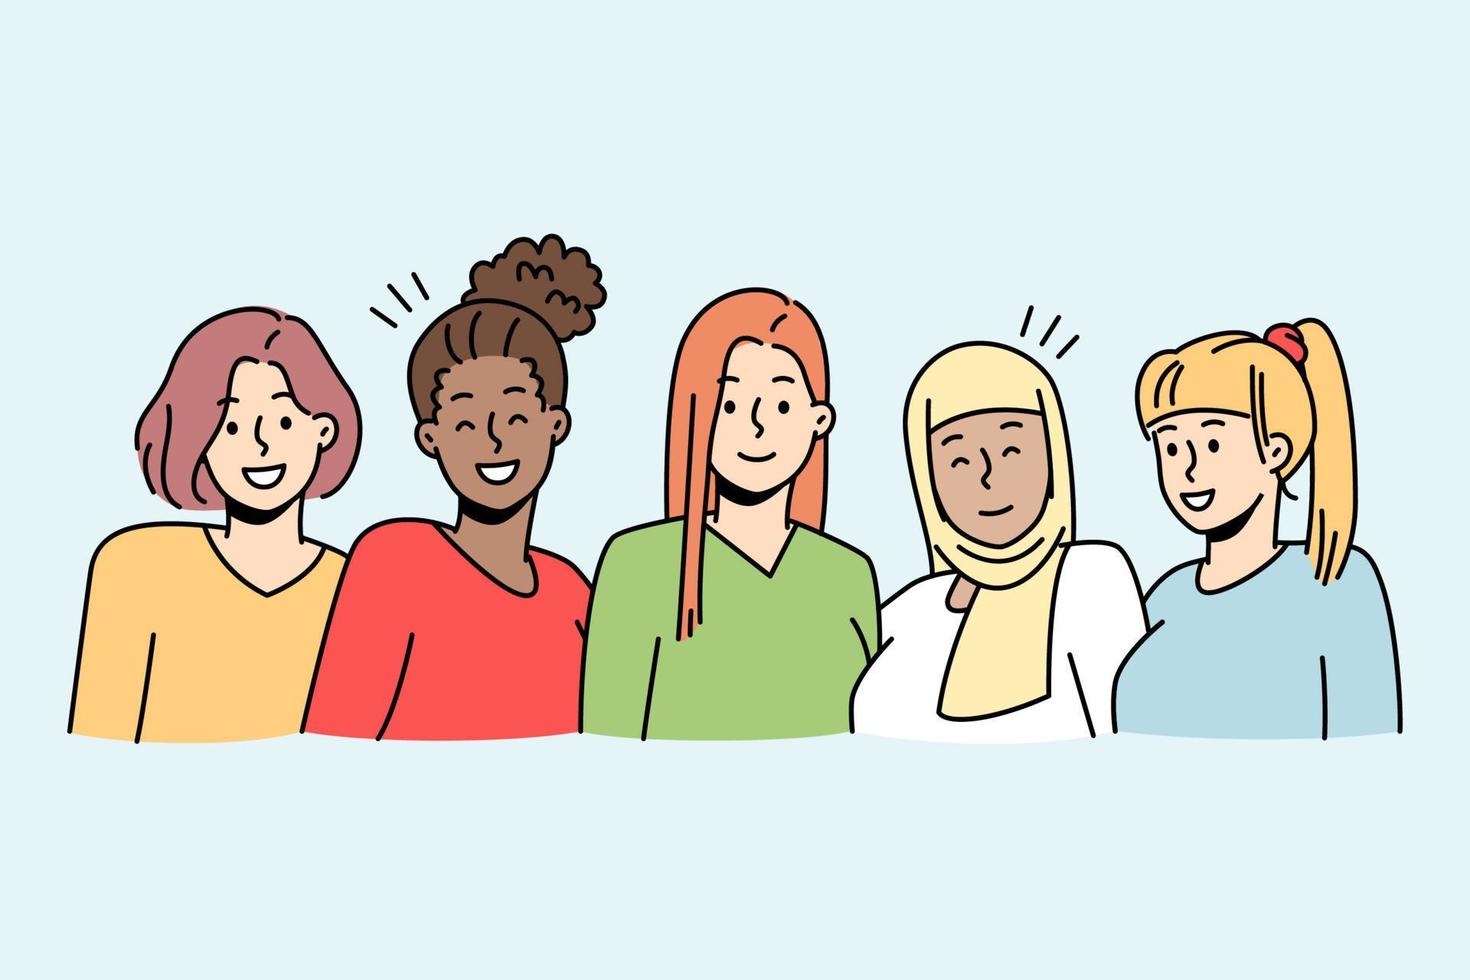 retrato de chicas diversas multiétnicas posando juntas. las mujeres interraciales sonrientes muestran unidad y amistad. ilustración vectorial vector